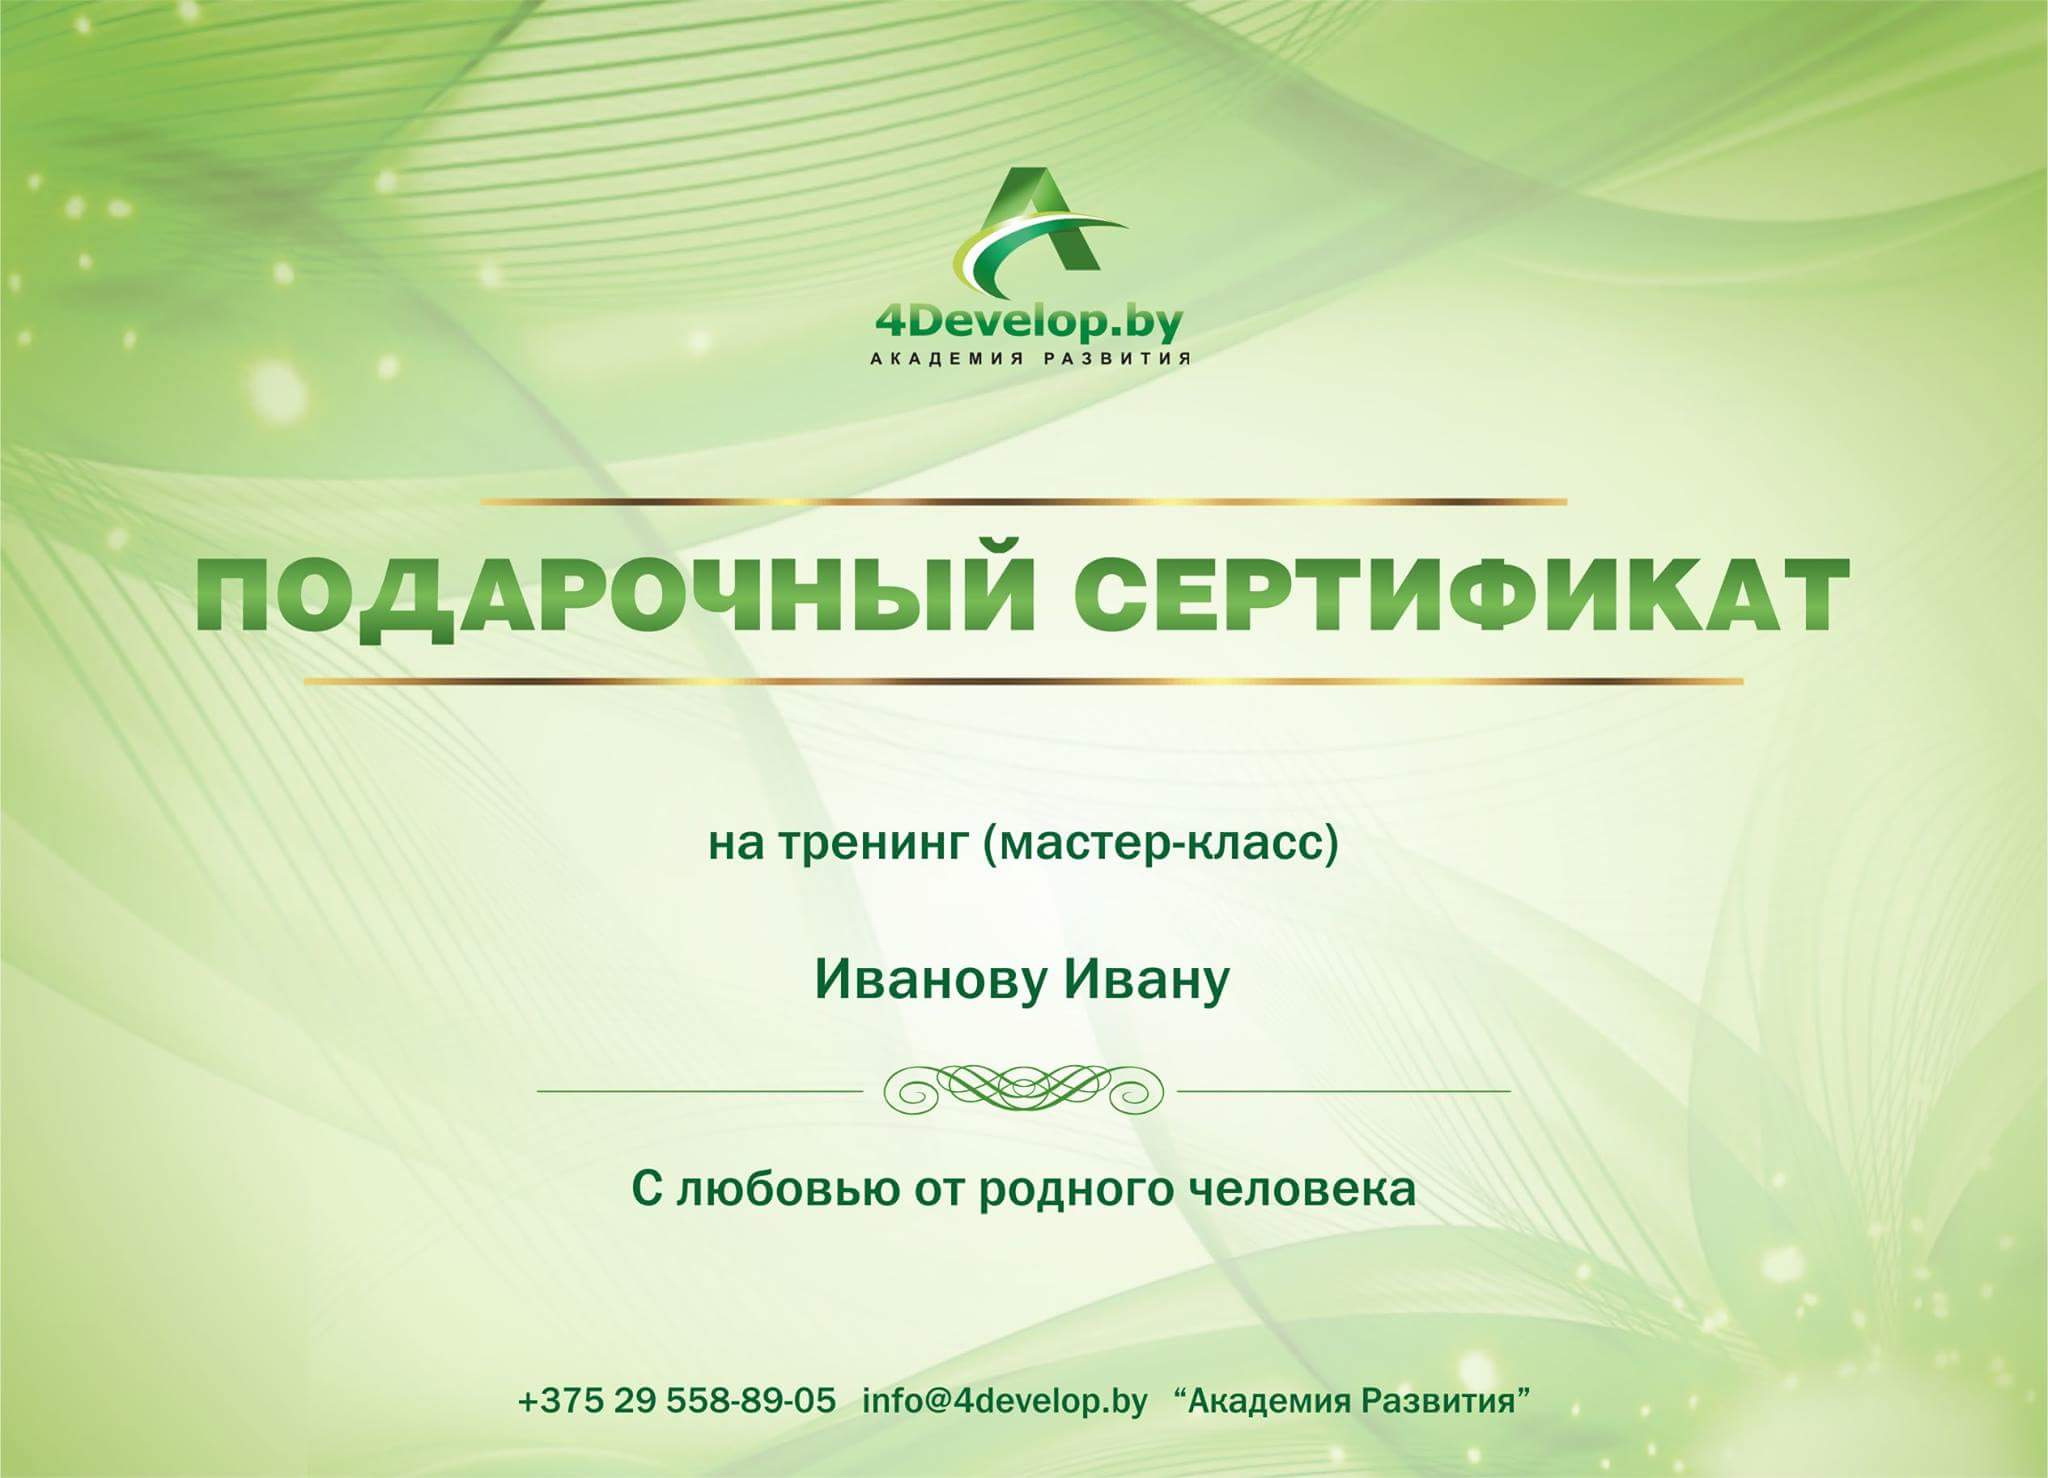 Подарочный Сертификат Академии Развития стандарт